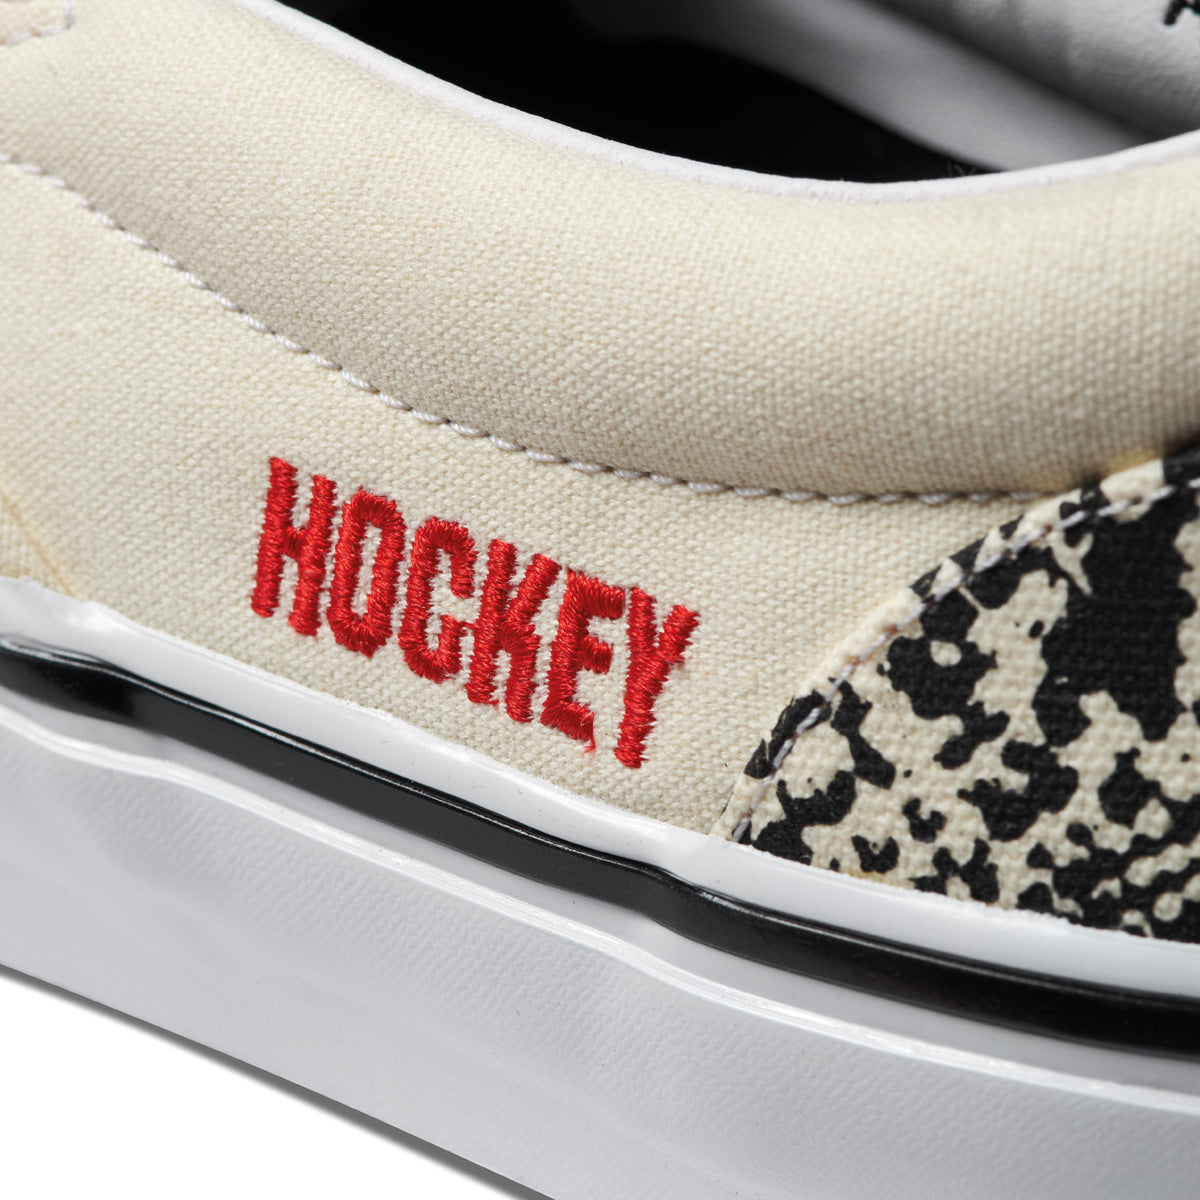 Vans x Hockey Skate Slip-on Shoes - Snake Skin – CCS